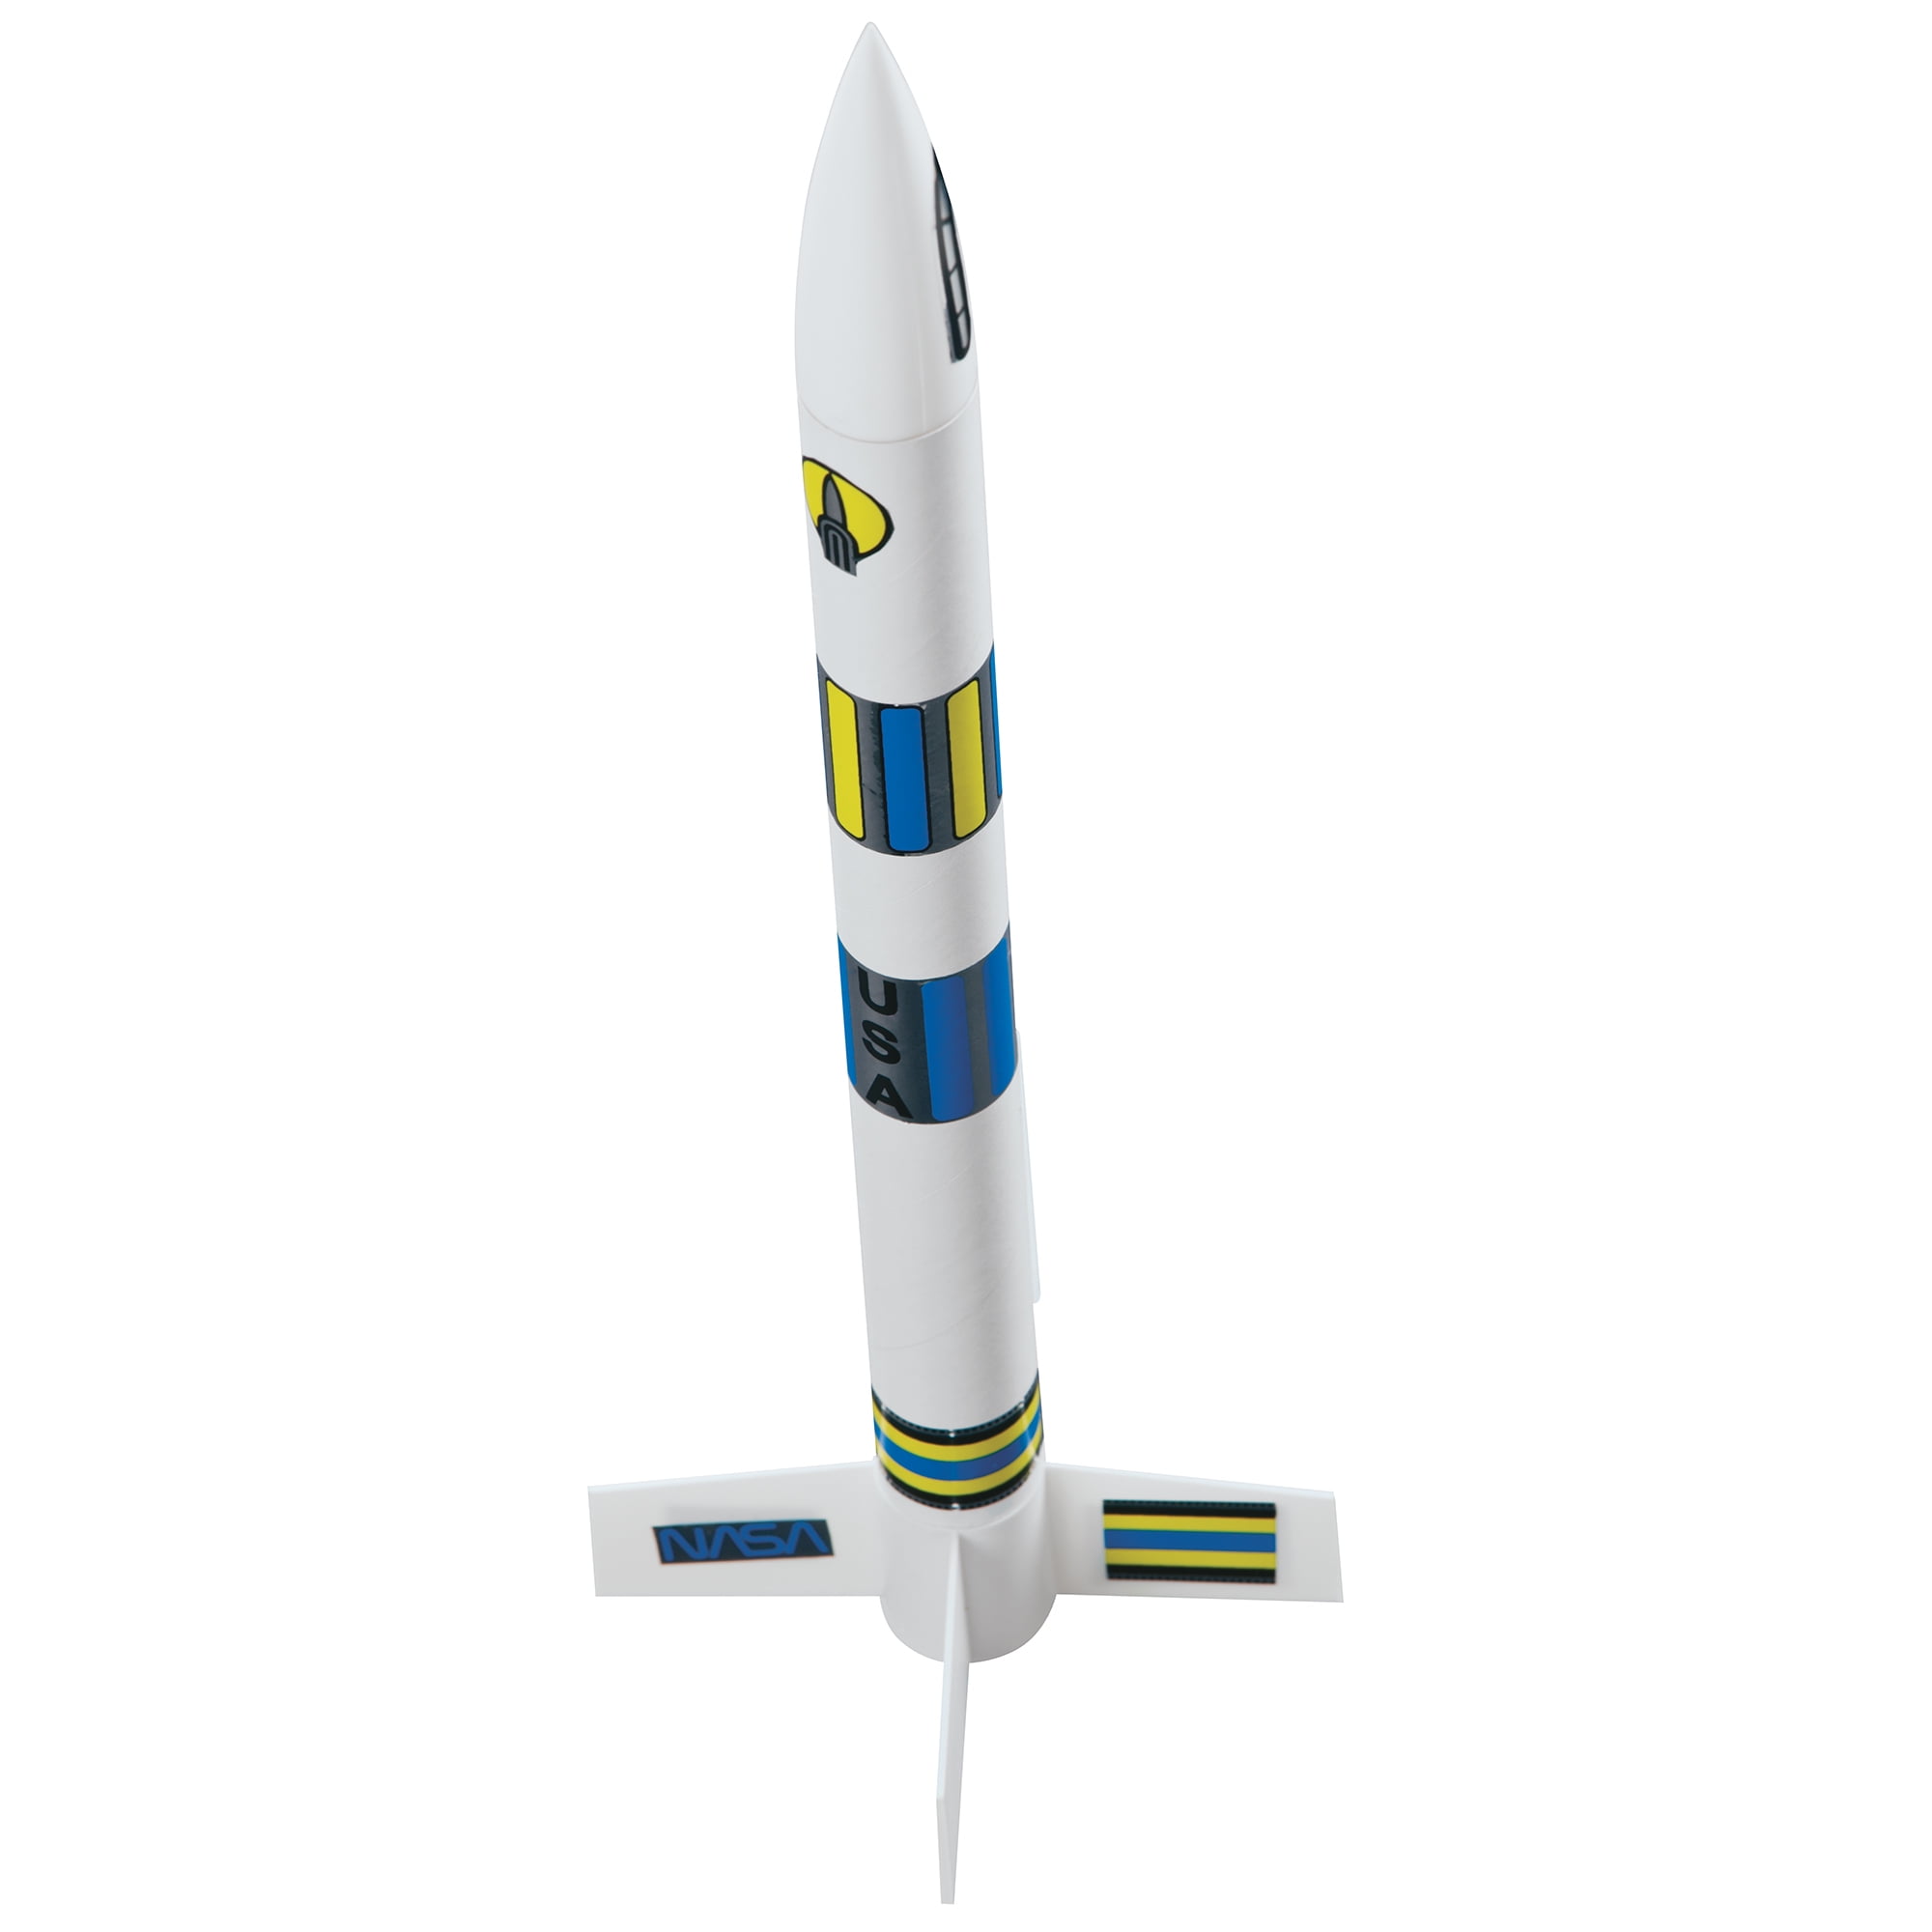 Estes Flip Flyer Model Rocket Launch Set E2x 1418 for sale online 